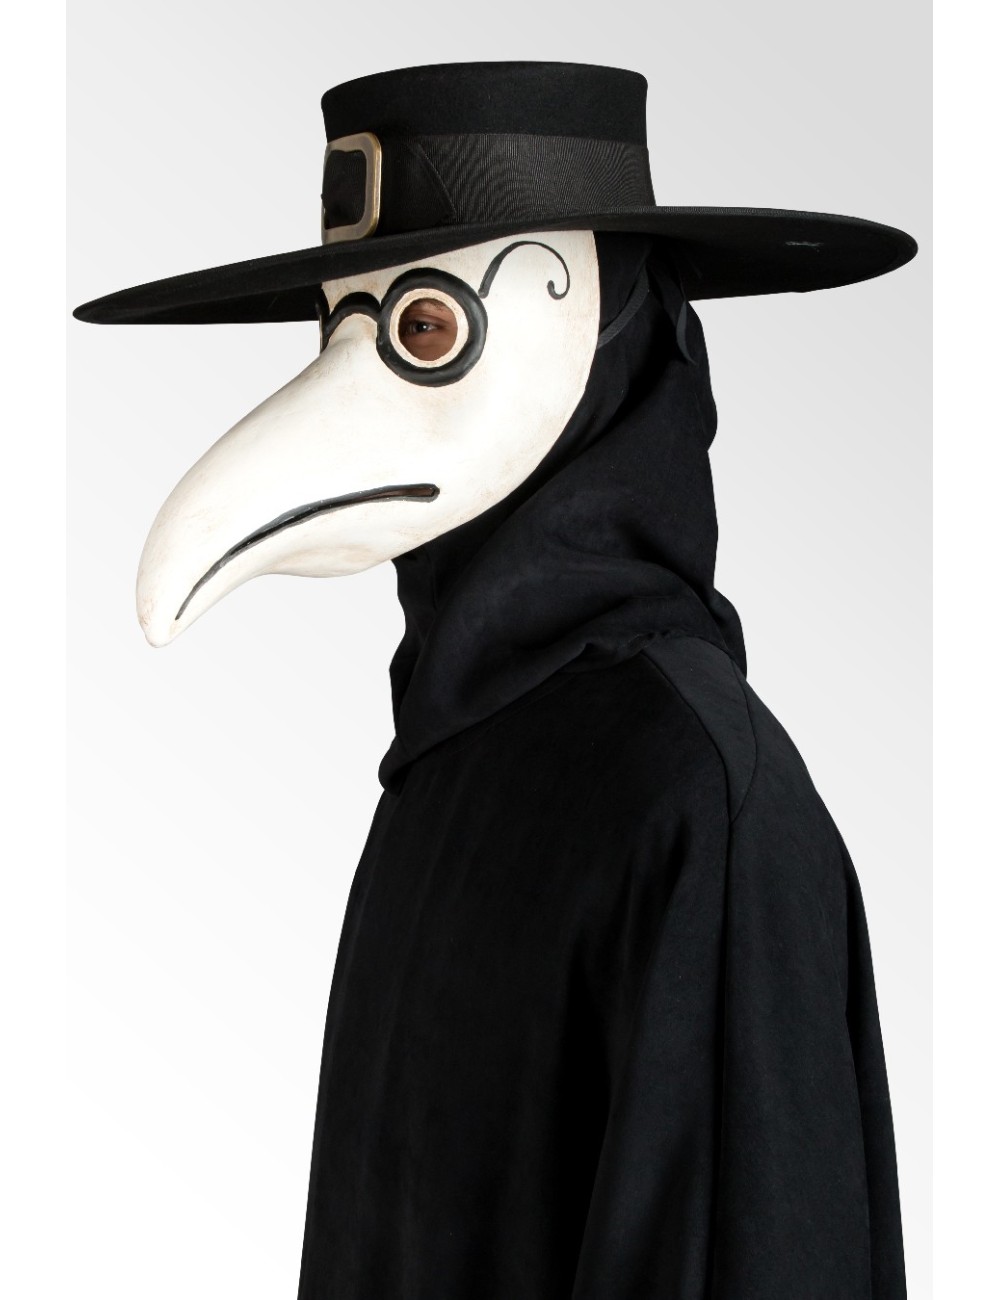 Plague Hat Online D5d72 F79fa - roblox plague doctor mask hat